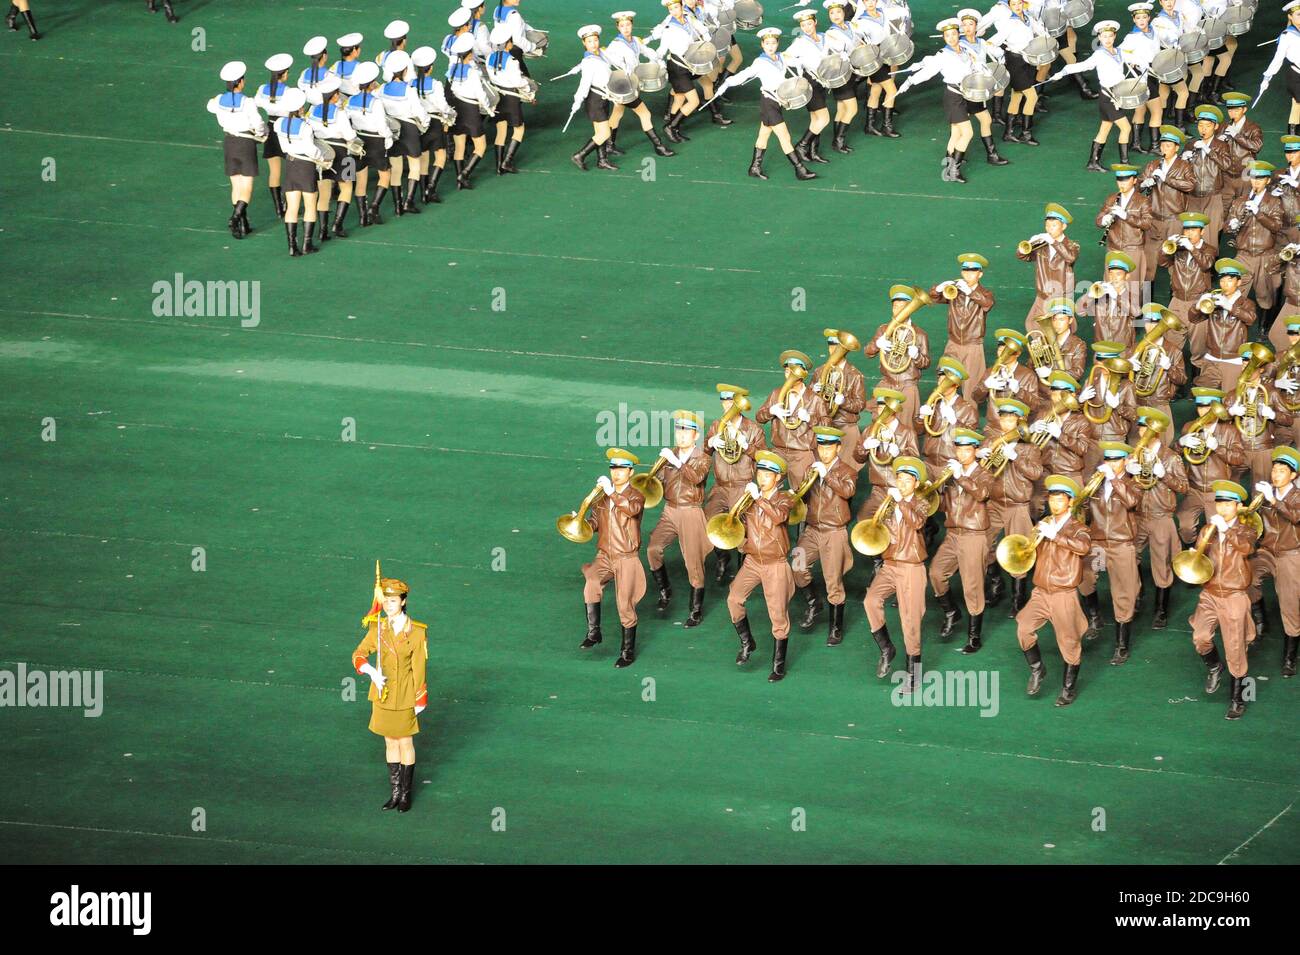 08.08.2012, Pyongyang, , Corée du Nord - UN groupe militaire jouera de la musique de cuivre pendant le festival Arirang et les jeux de masse dans la tête nord-coréenne Banque D'Images